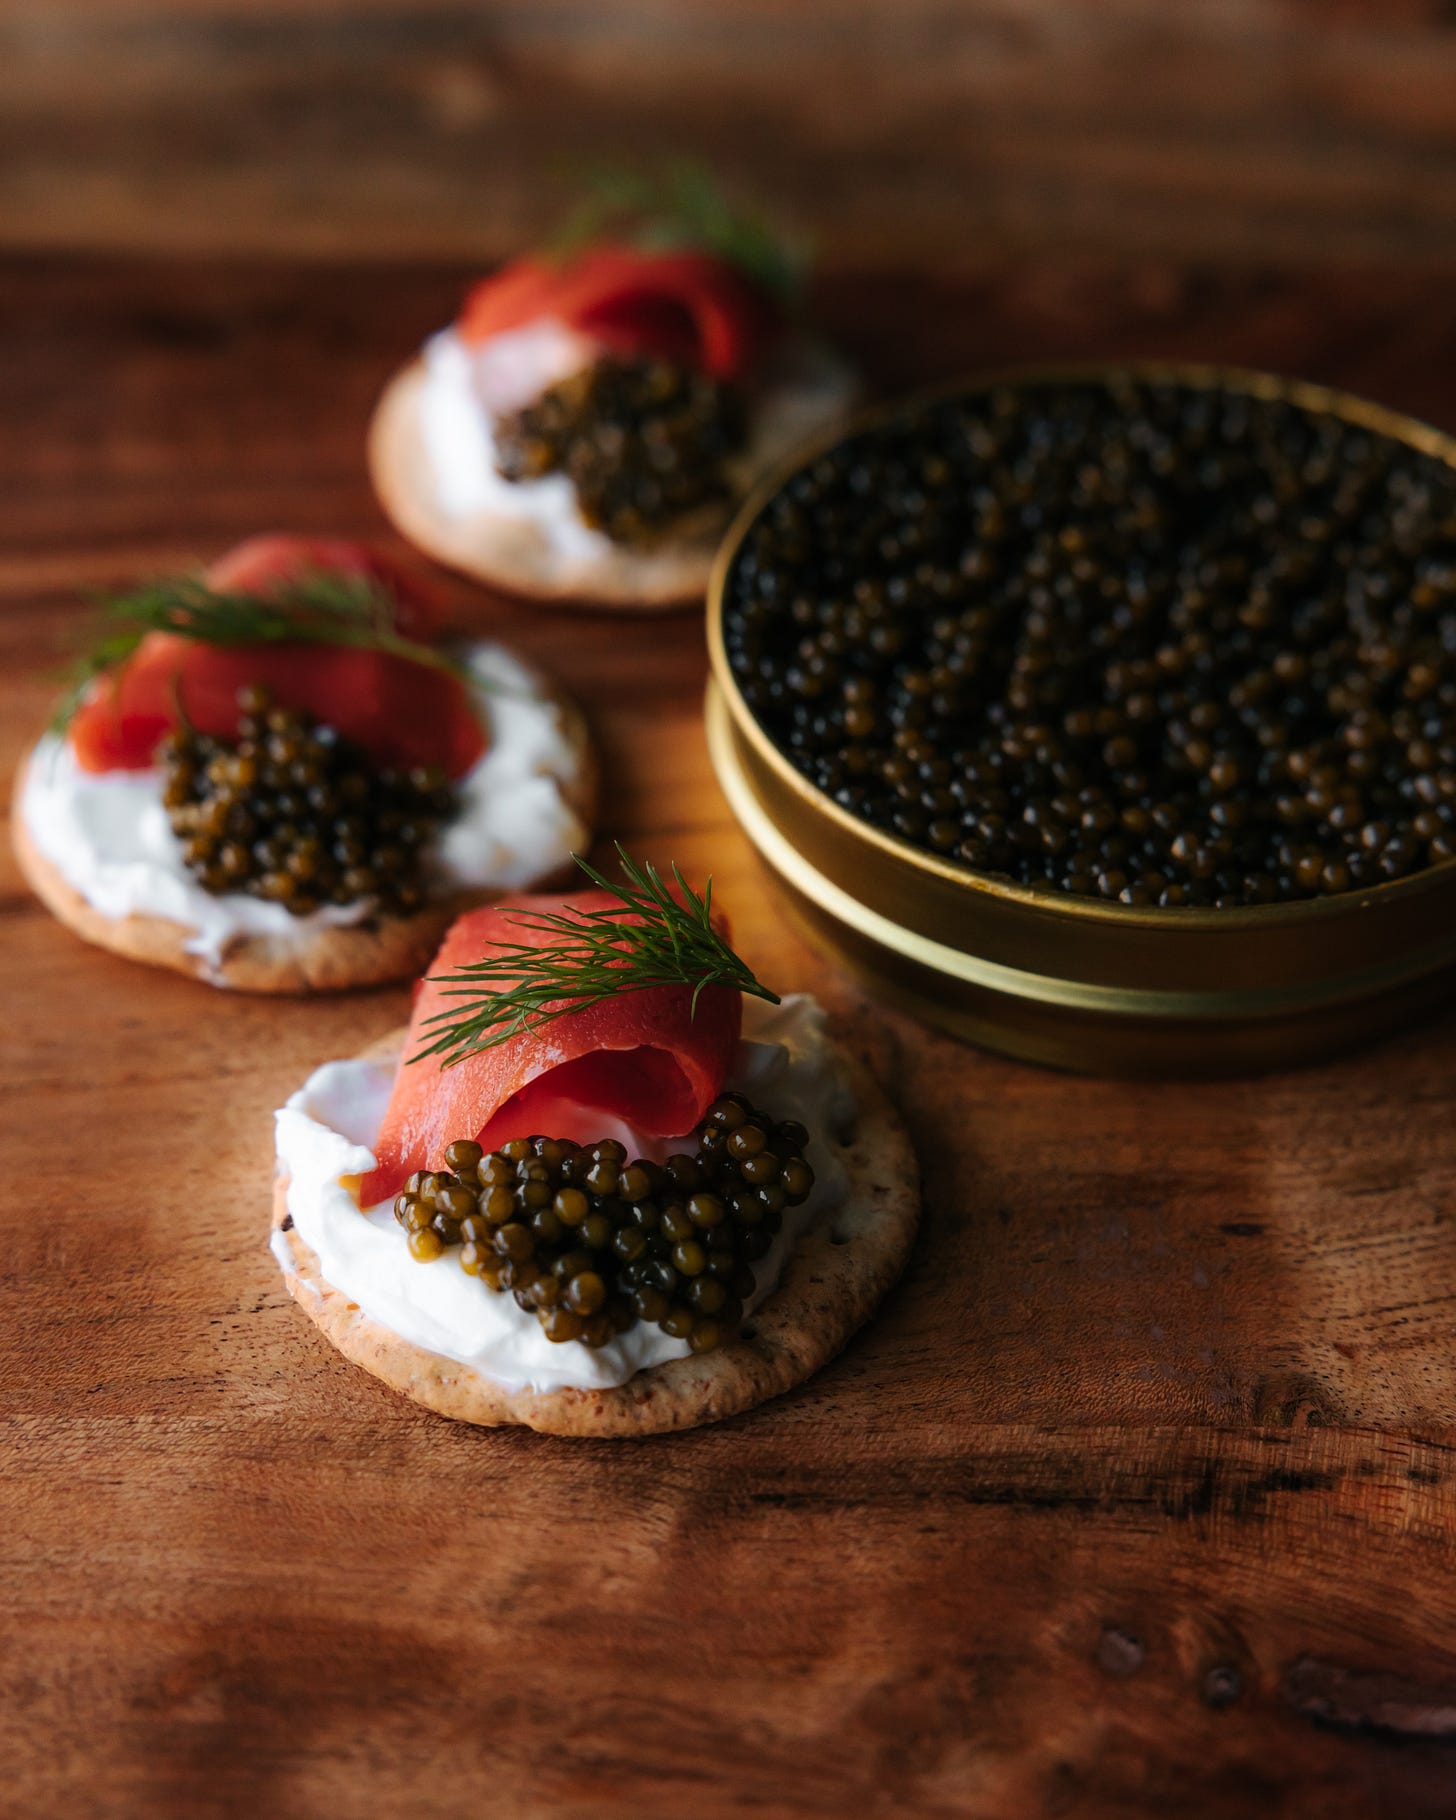 Beluga caviar and crackers